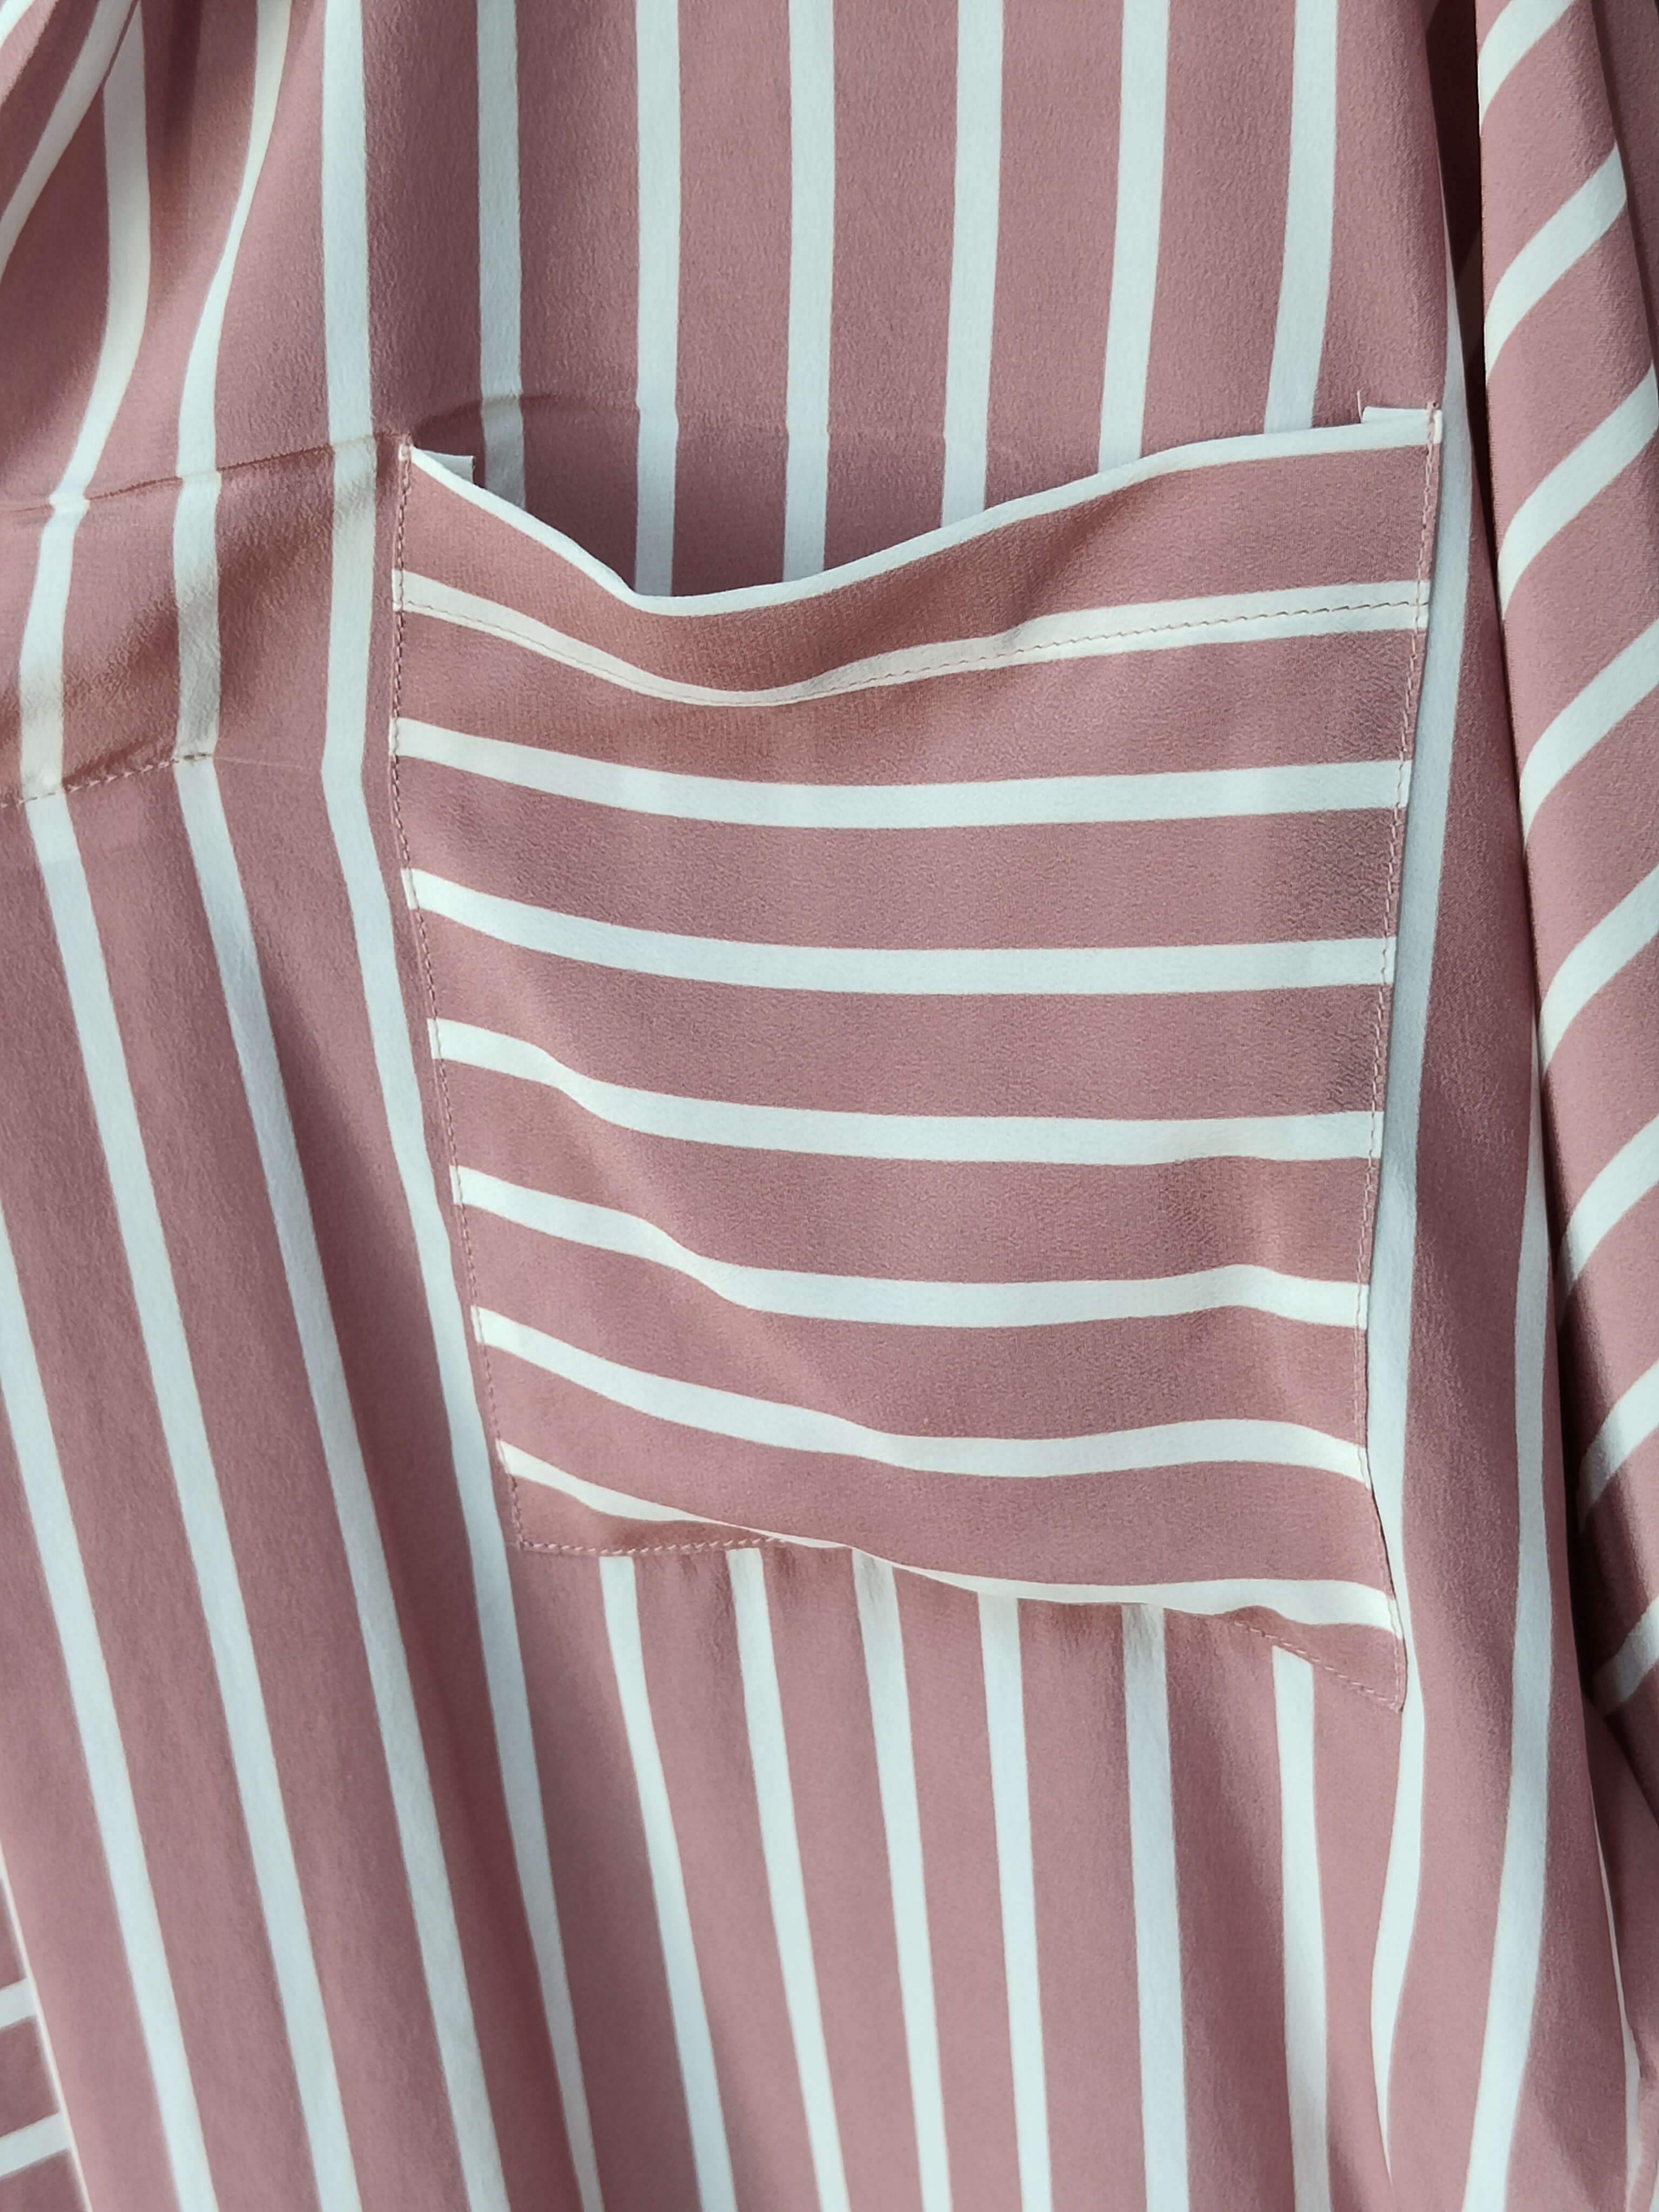 Blusa de seda 100 con rayas rosas de talla grande de marca privada a granel